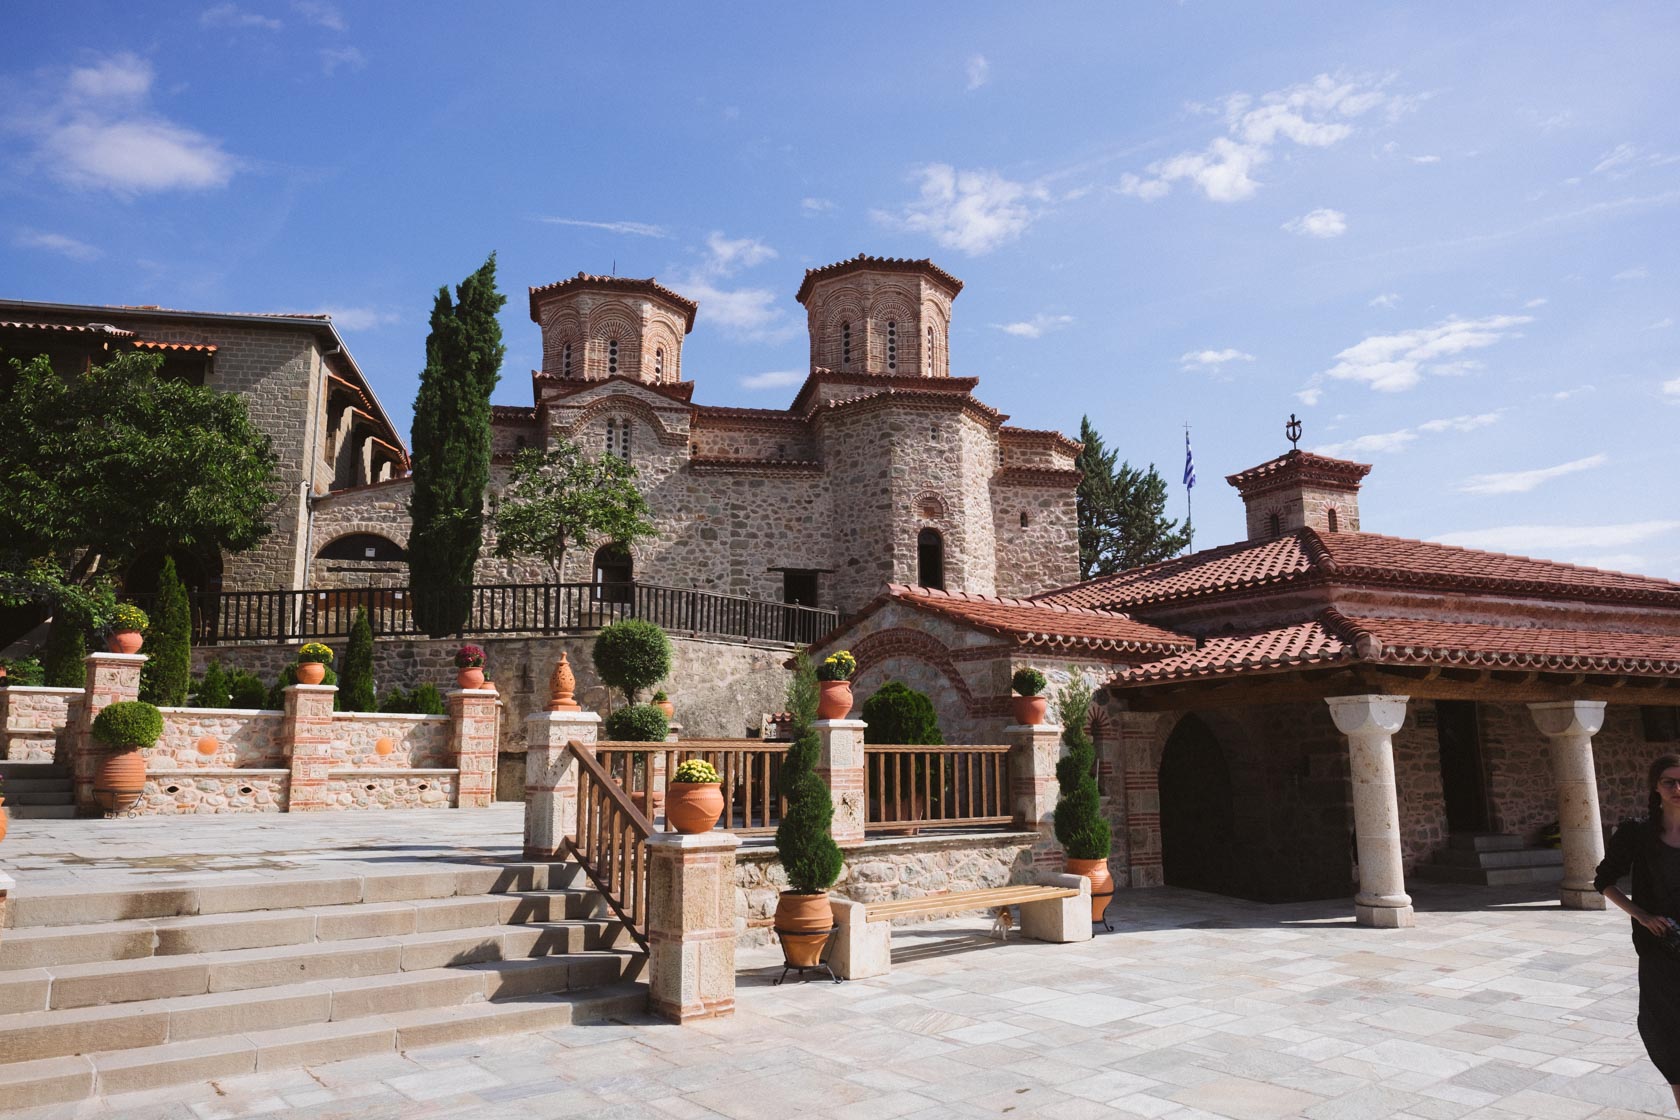 Varlaam monastery in Meteora